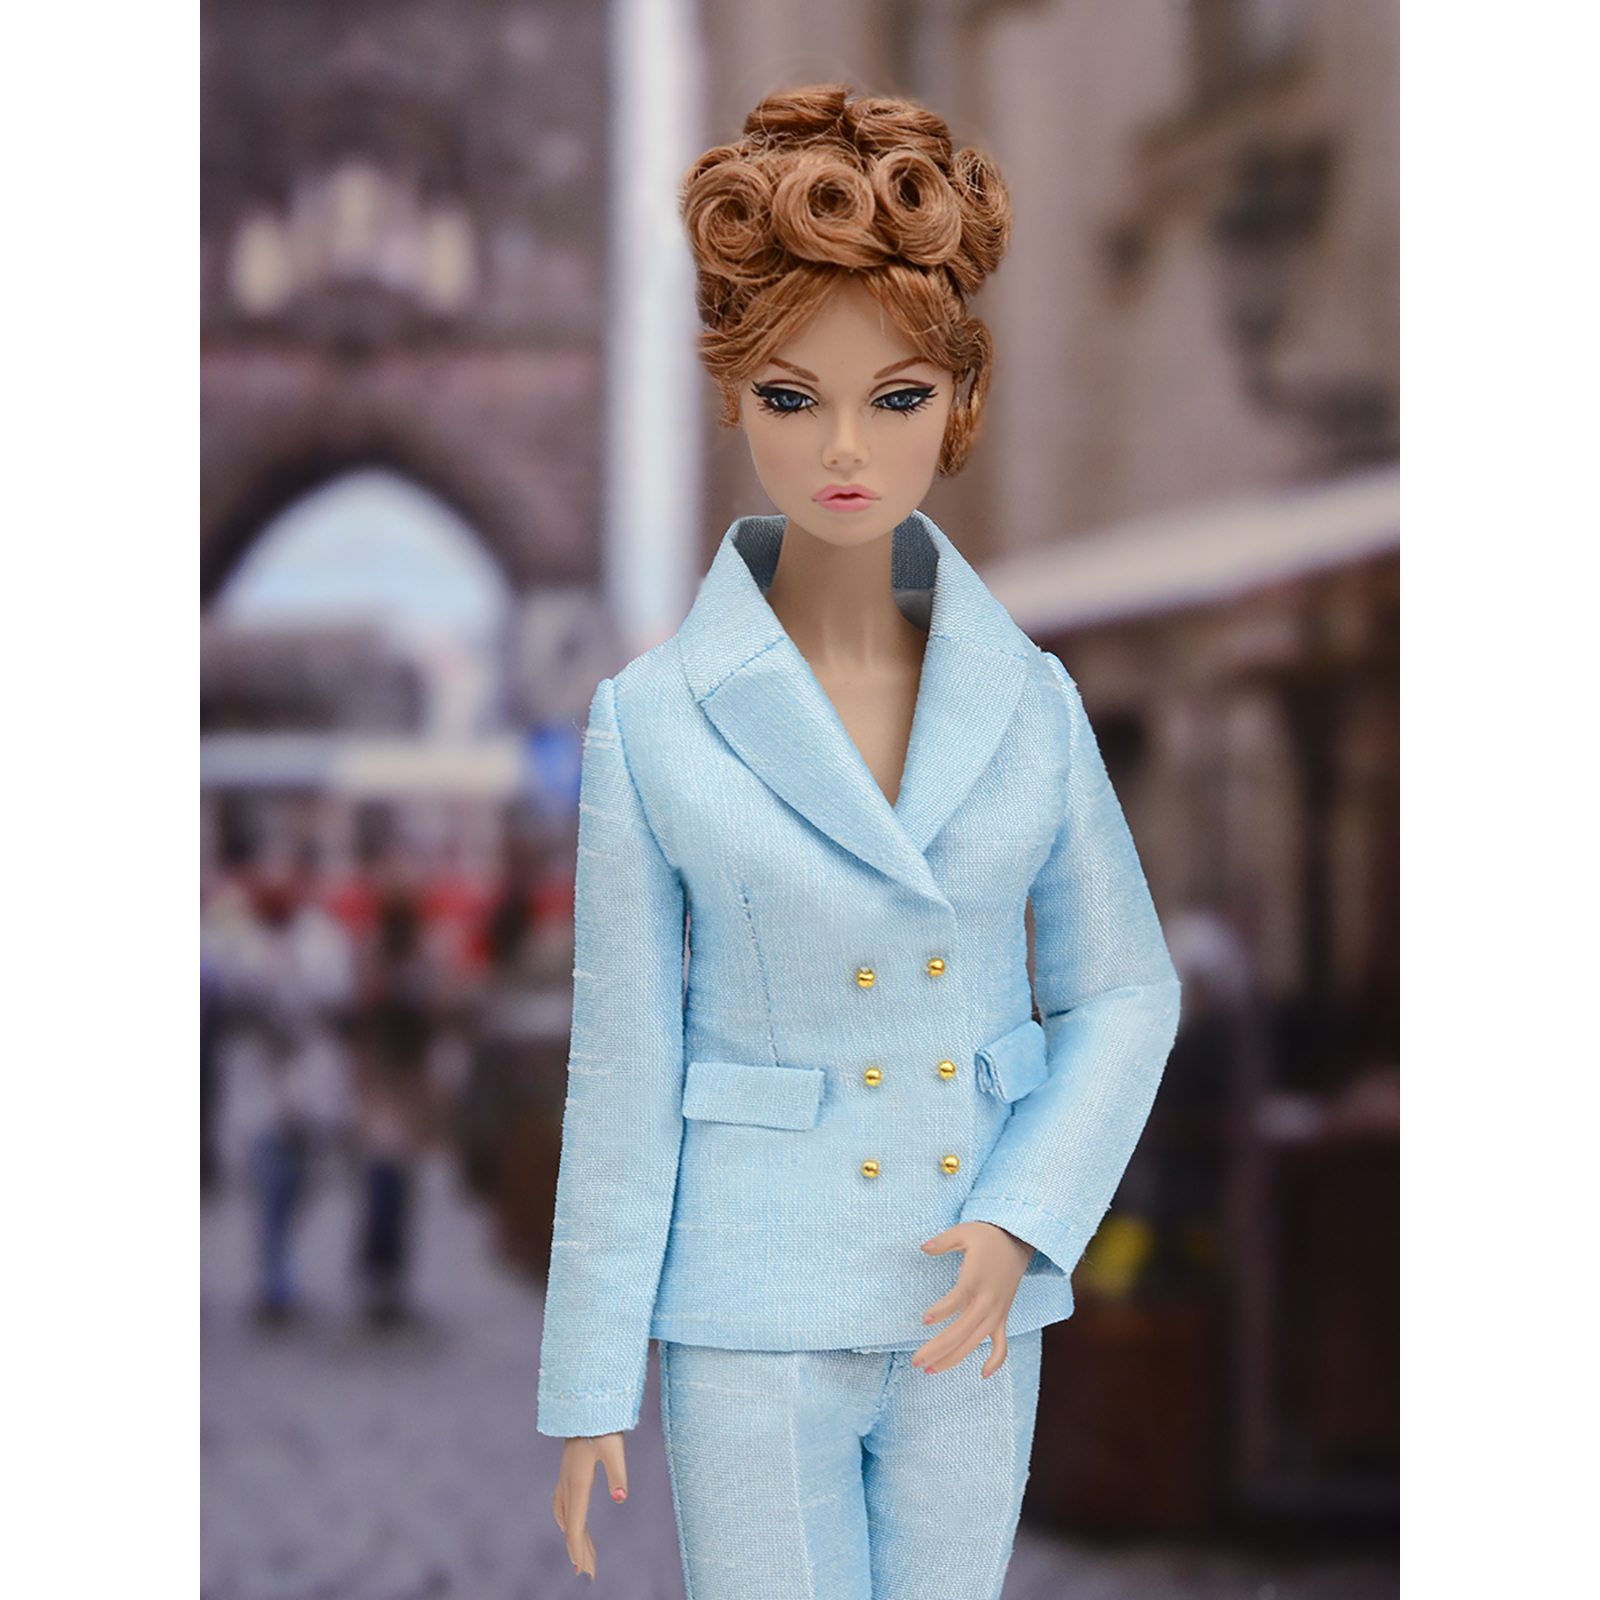 Шелковый брючный костюм Эленприв Светло-голубой для куклы 29 см типа Барби FA-011-09 - фото 5